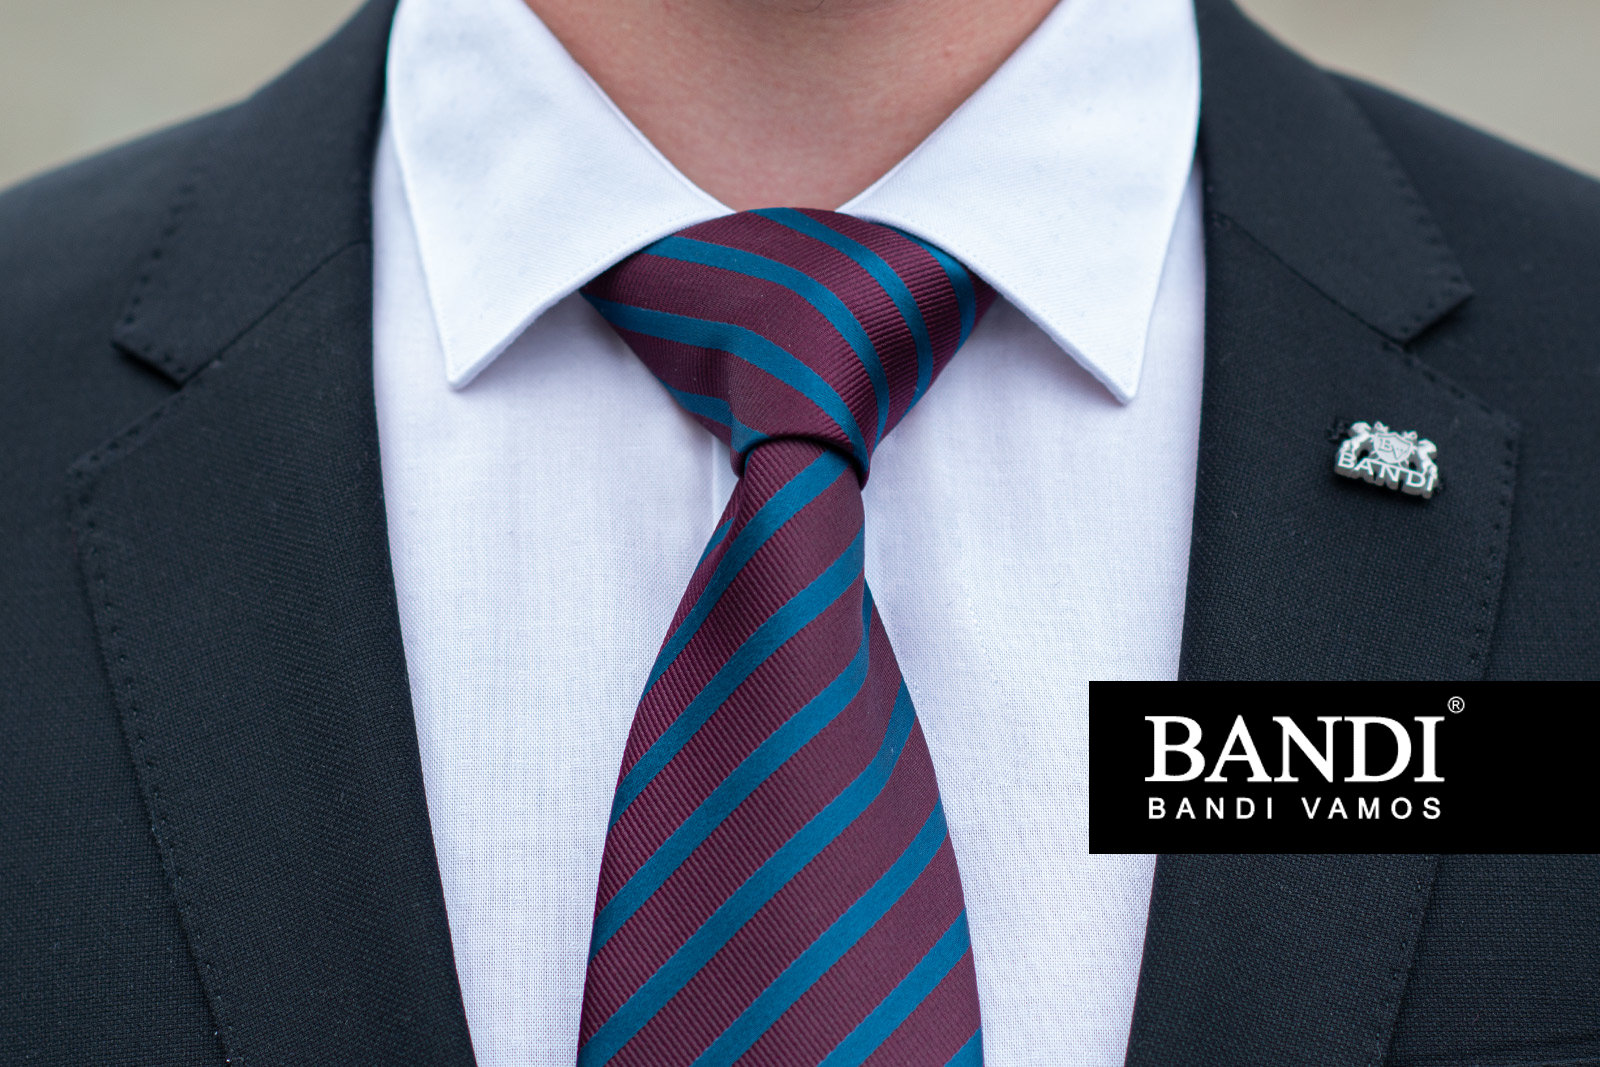 Co je známý uzel na kravatě?